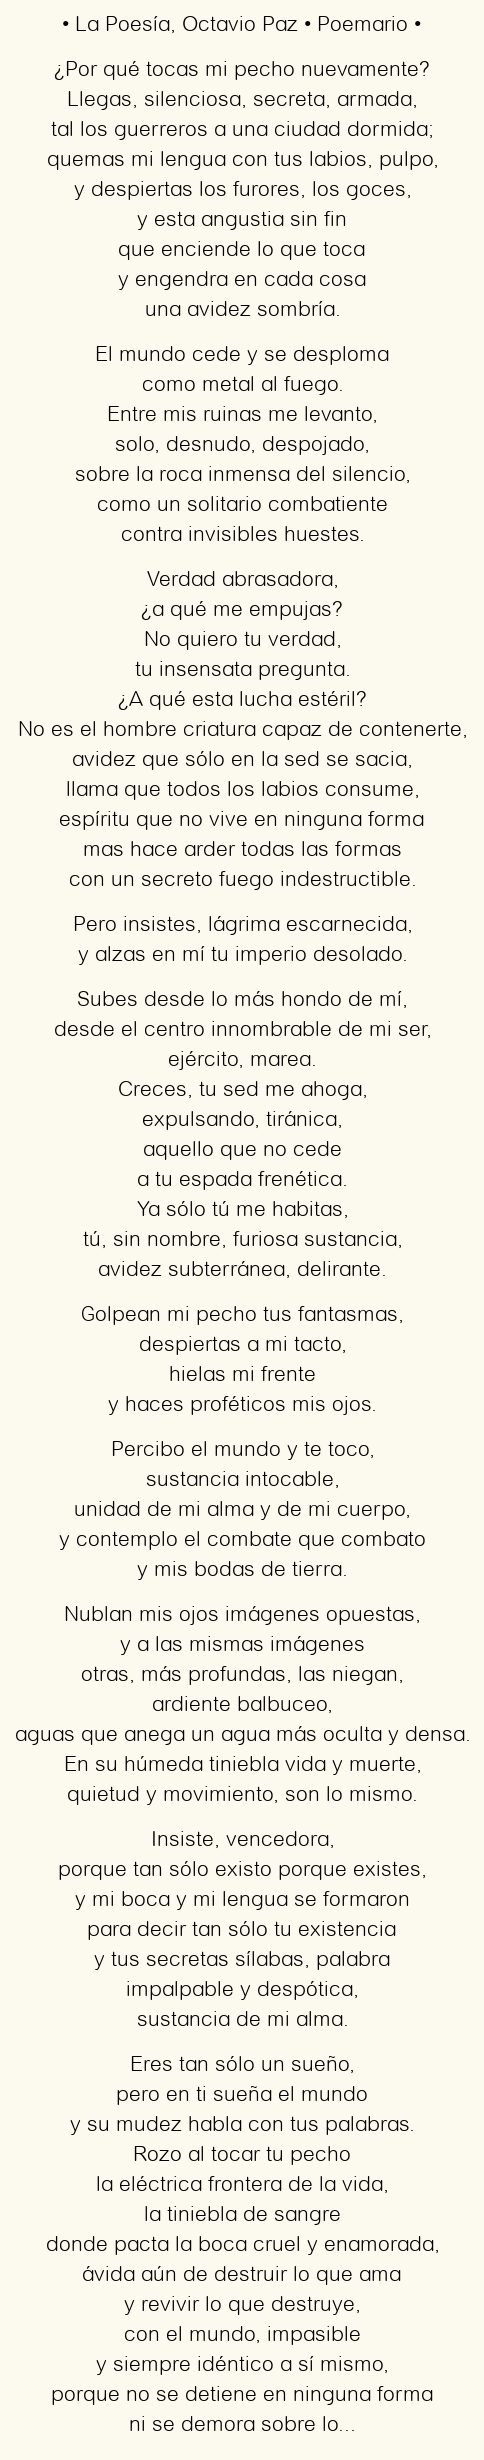 Imagen con el poema La Poesía, por Octavio Paz